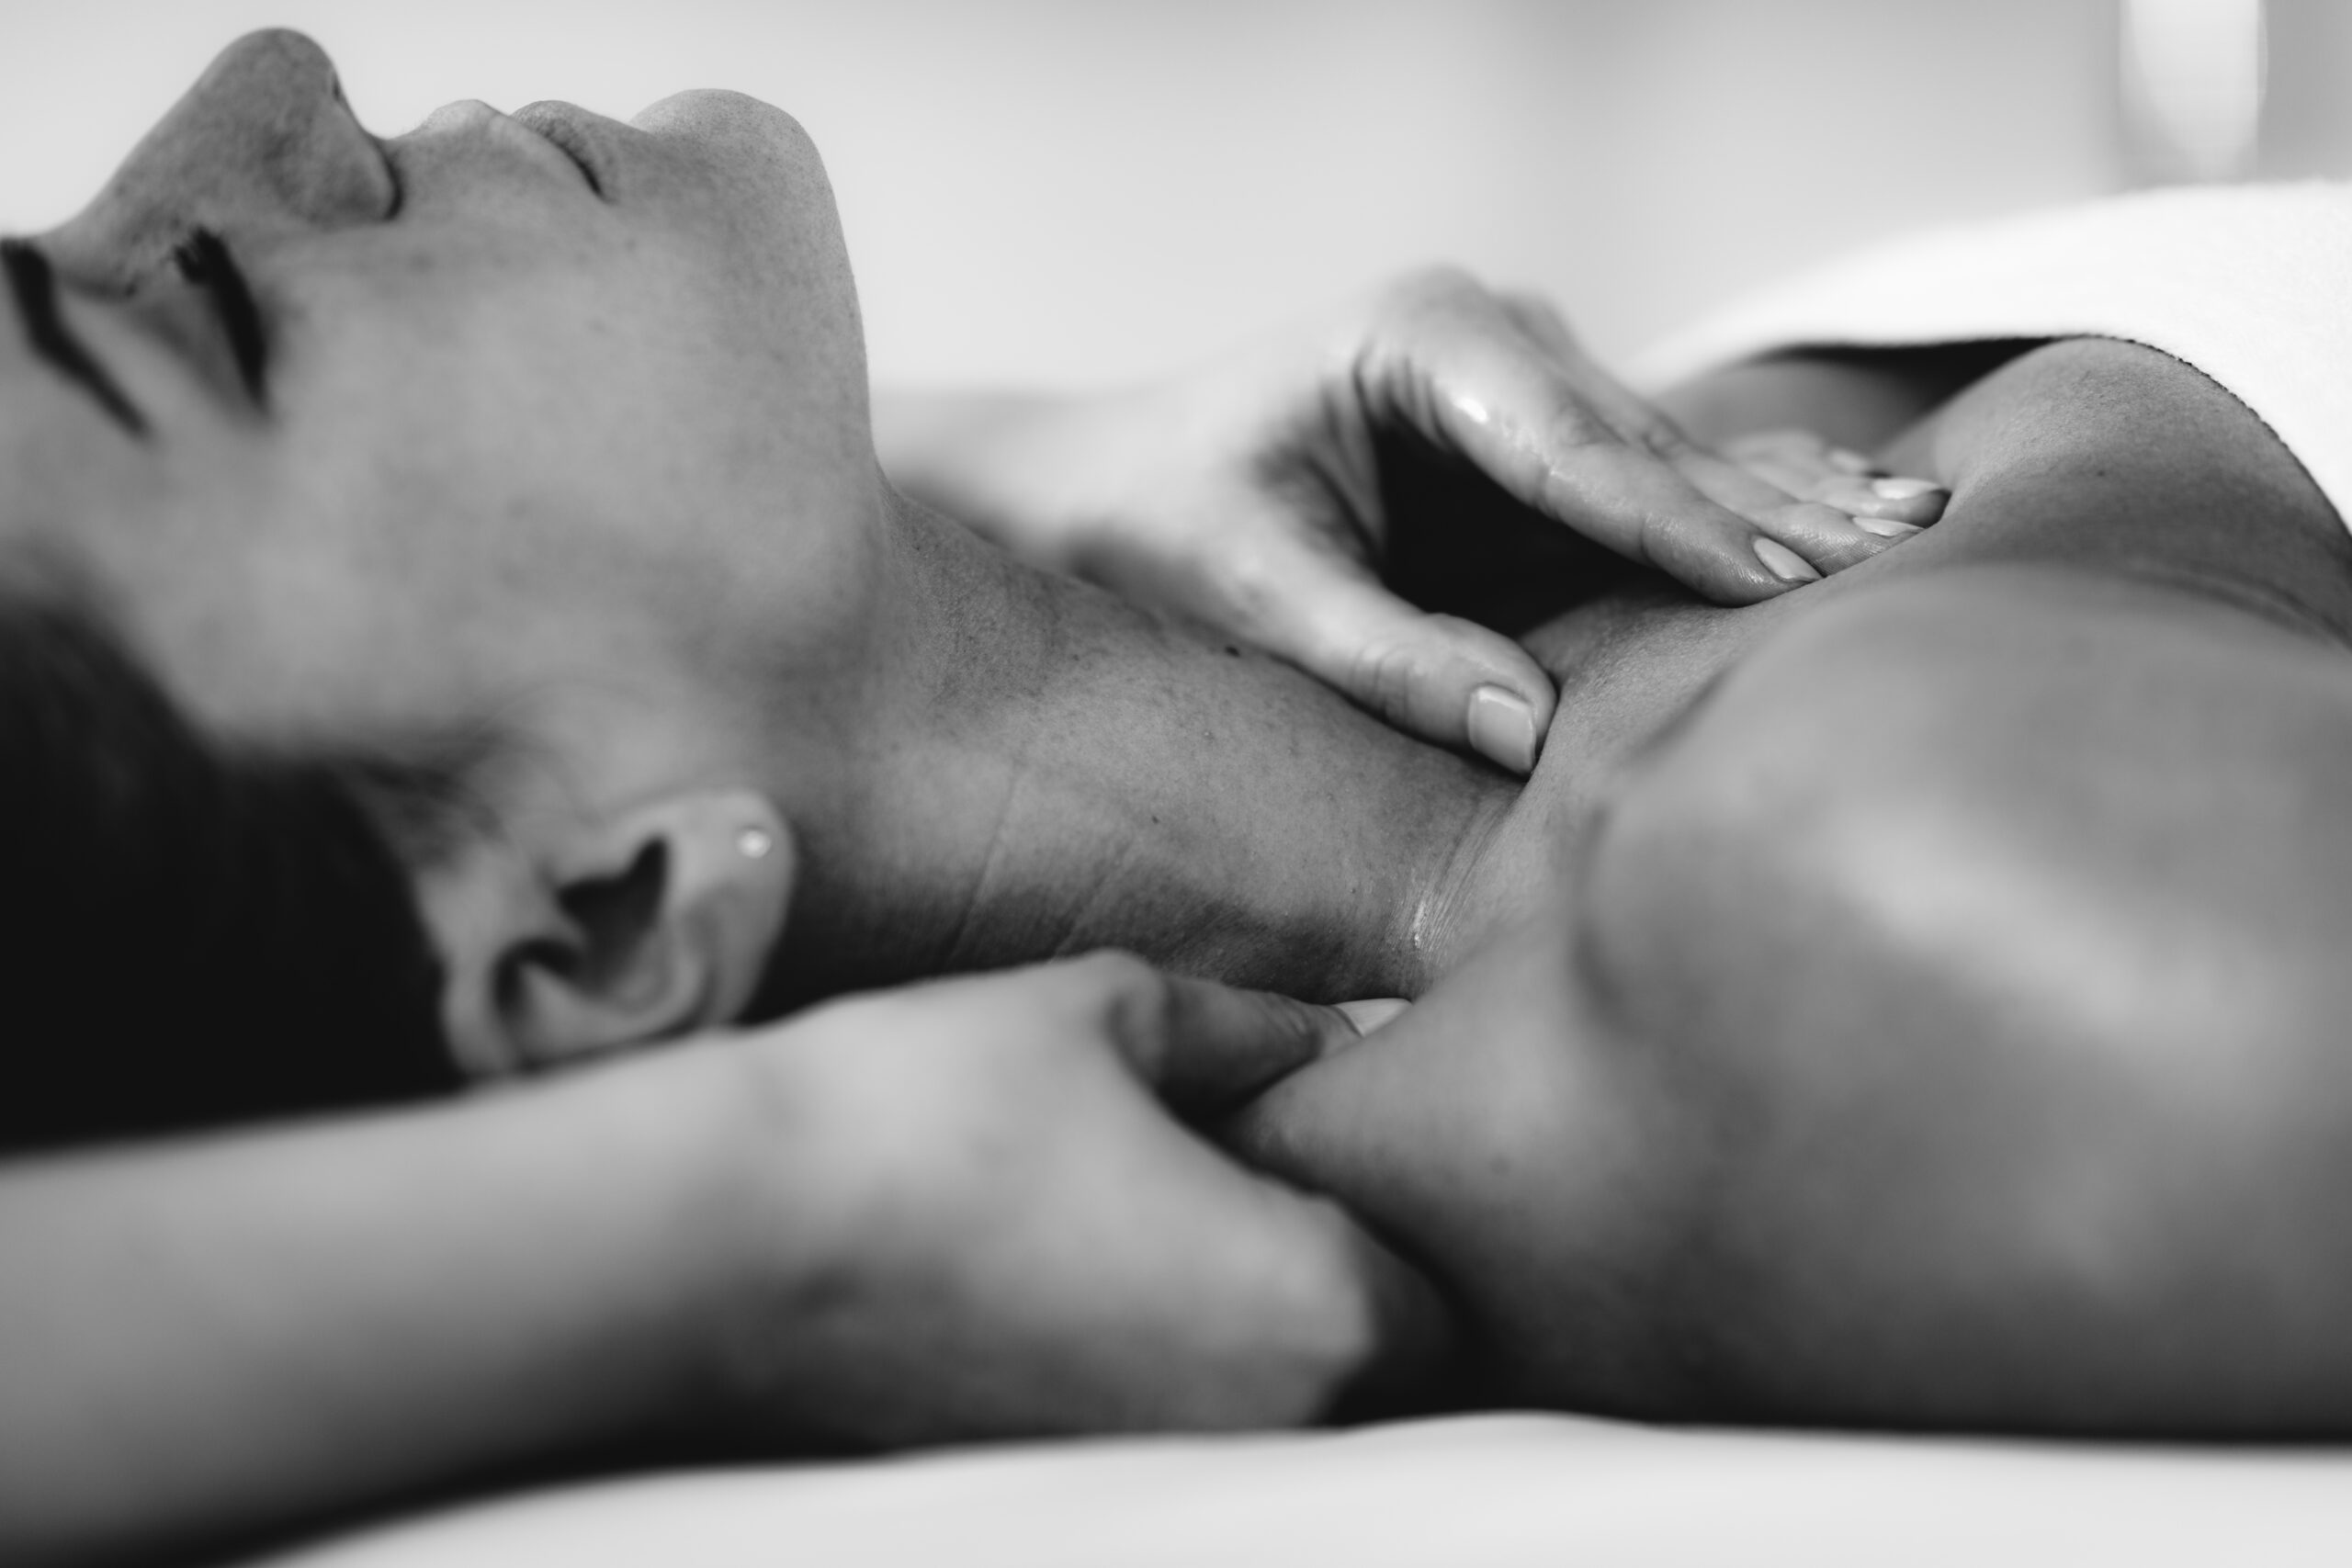 accupressure massage